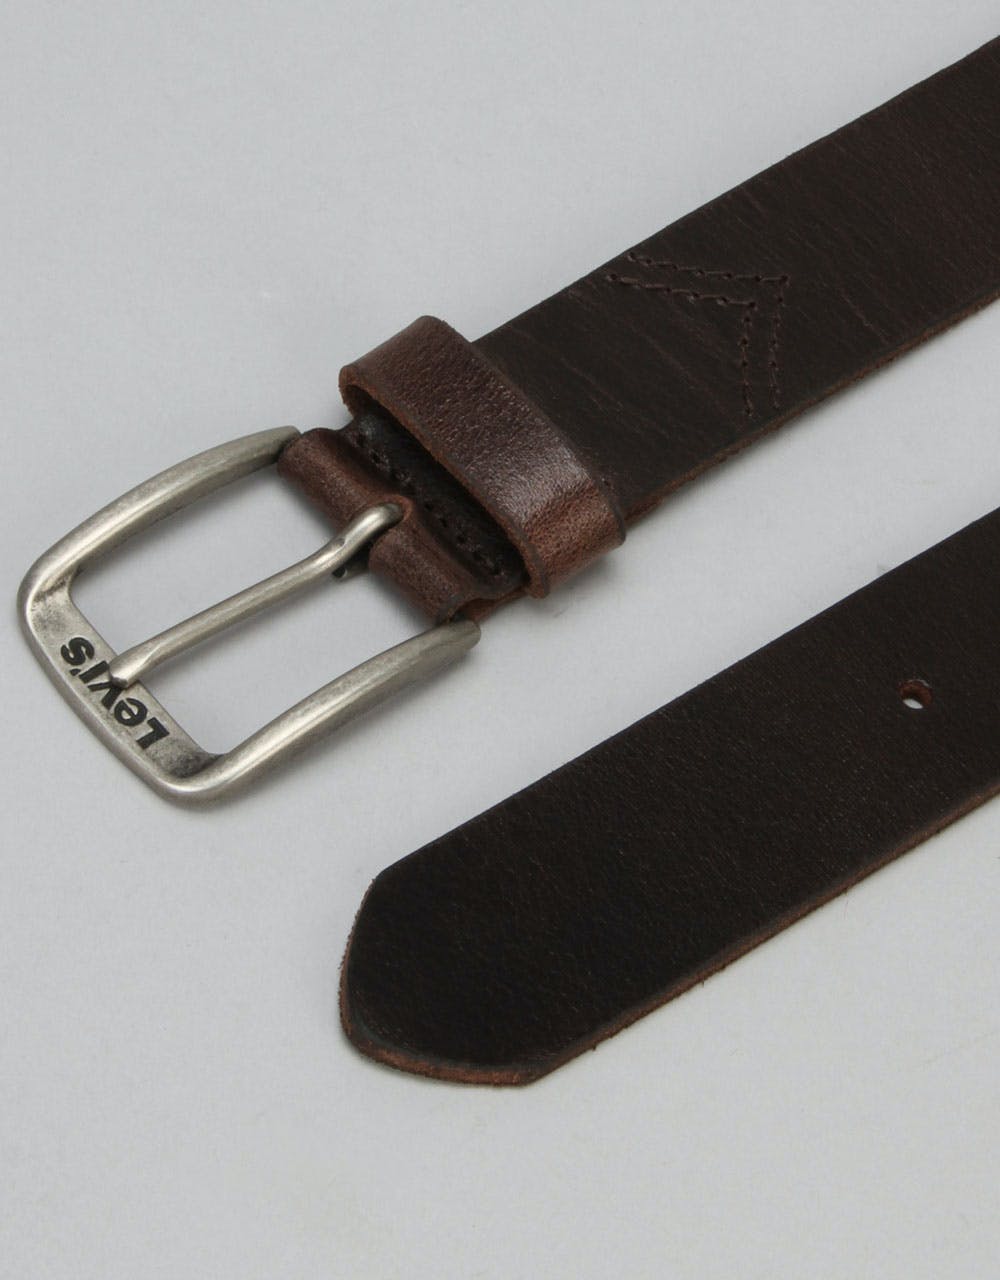 Levis Alturas Leather Belt - Dark Brown